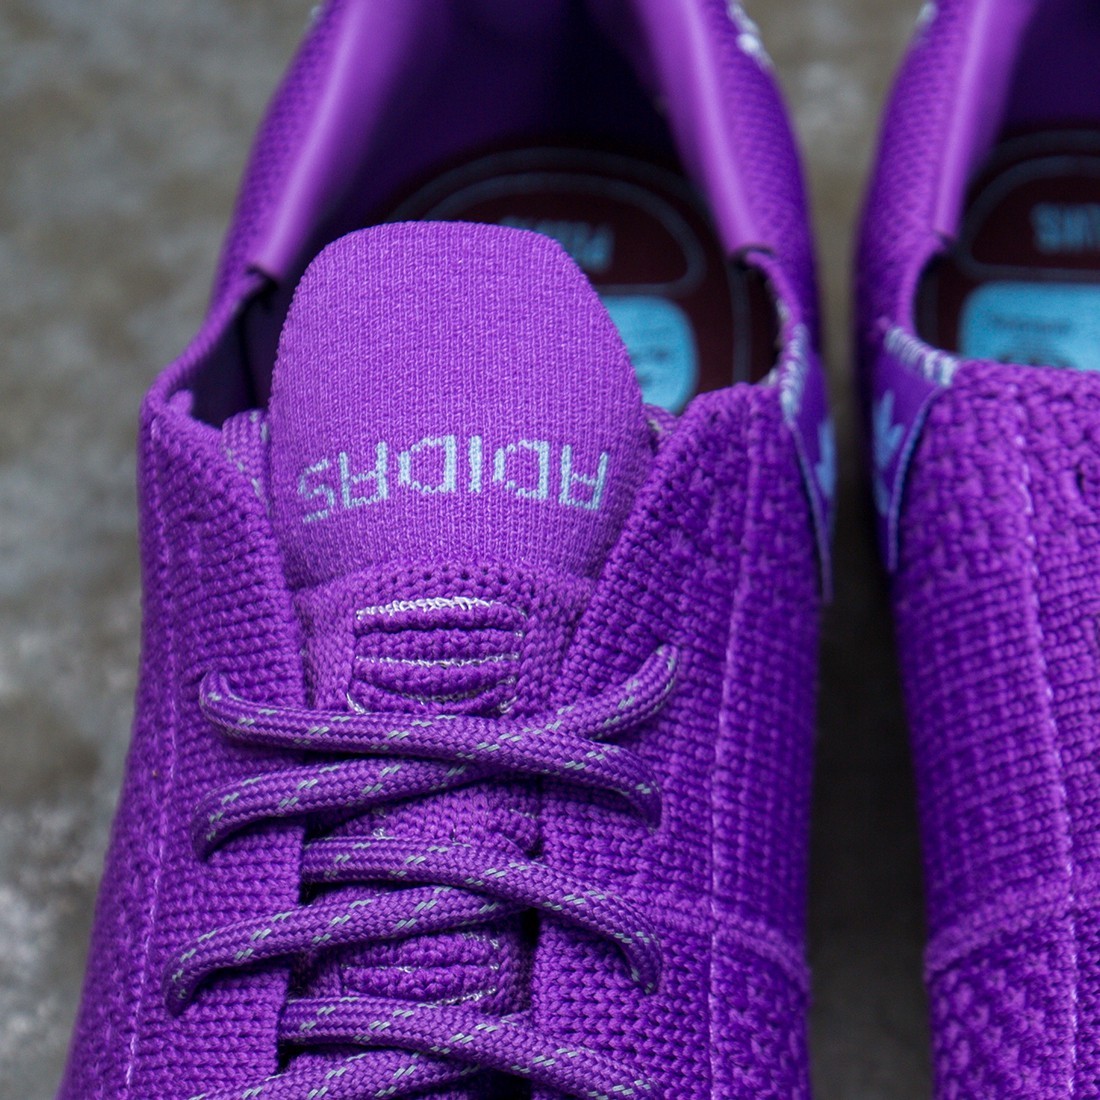 adidas originals superstar primeknit mens purple